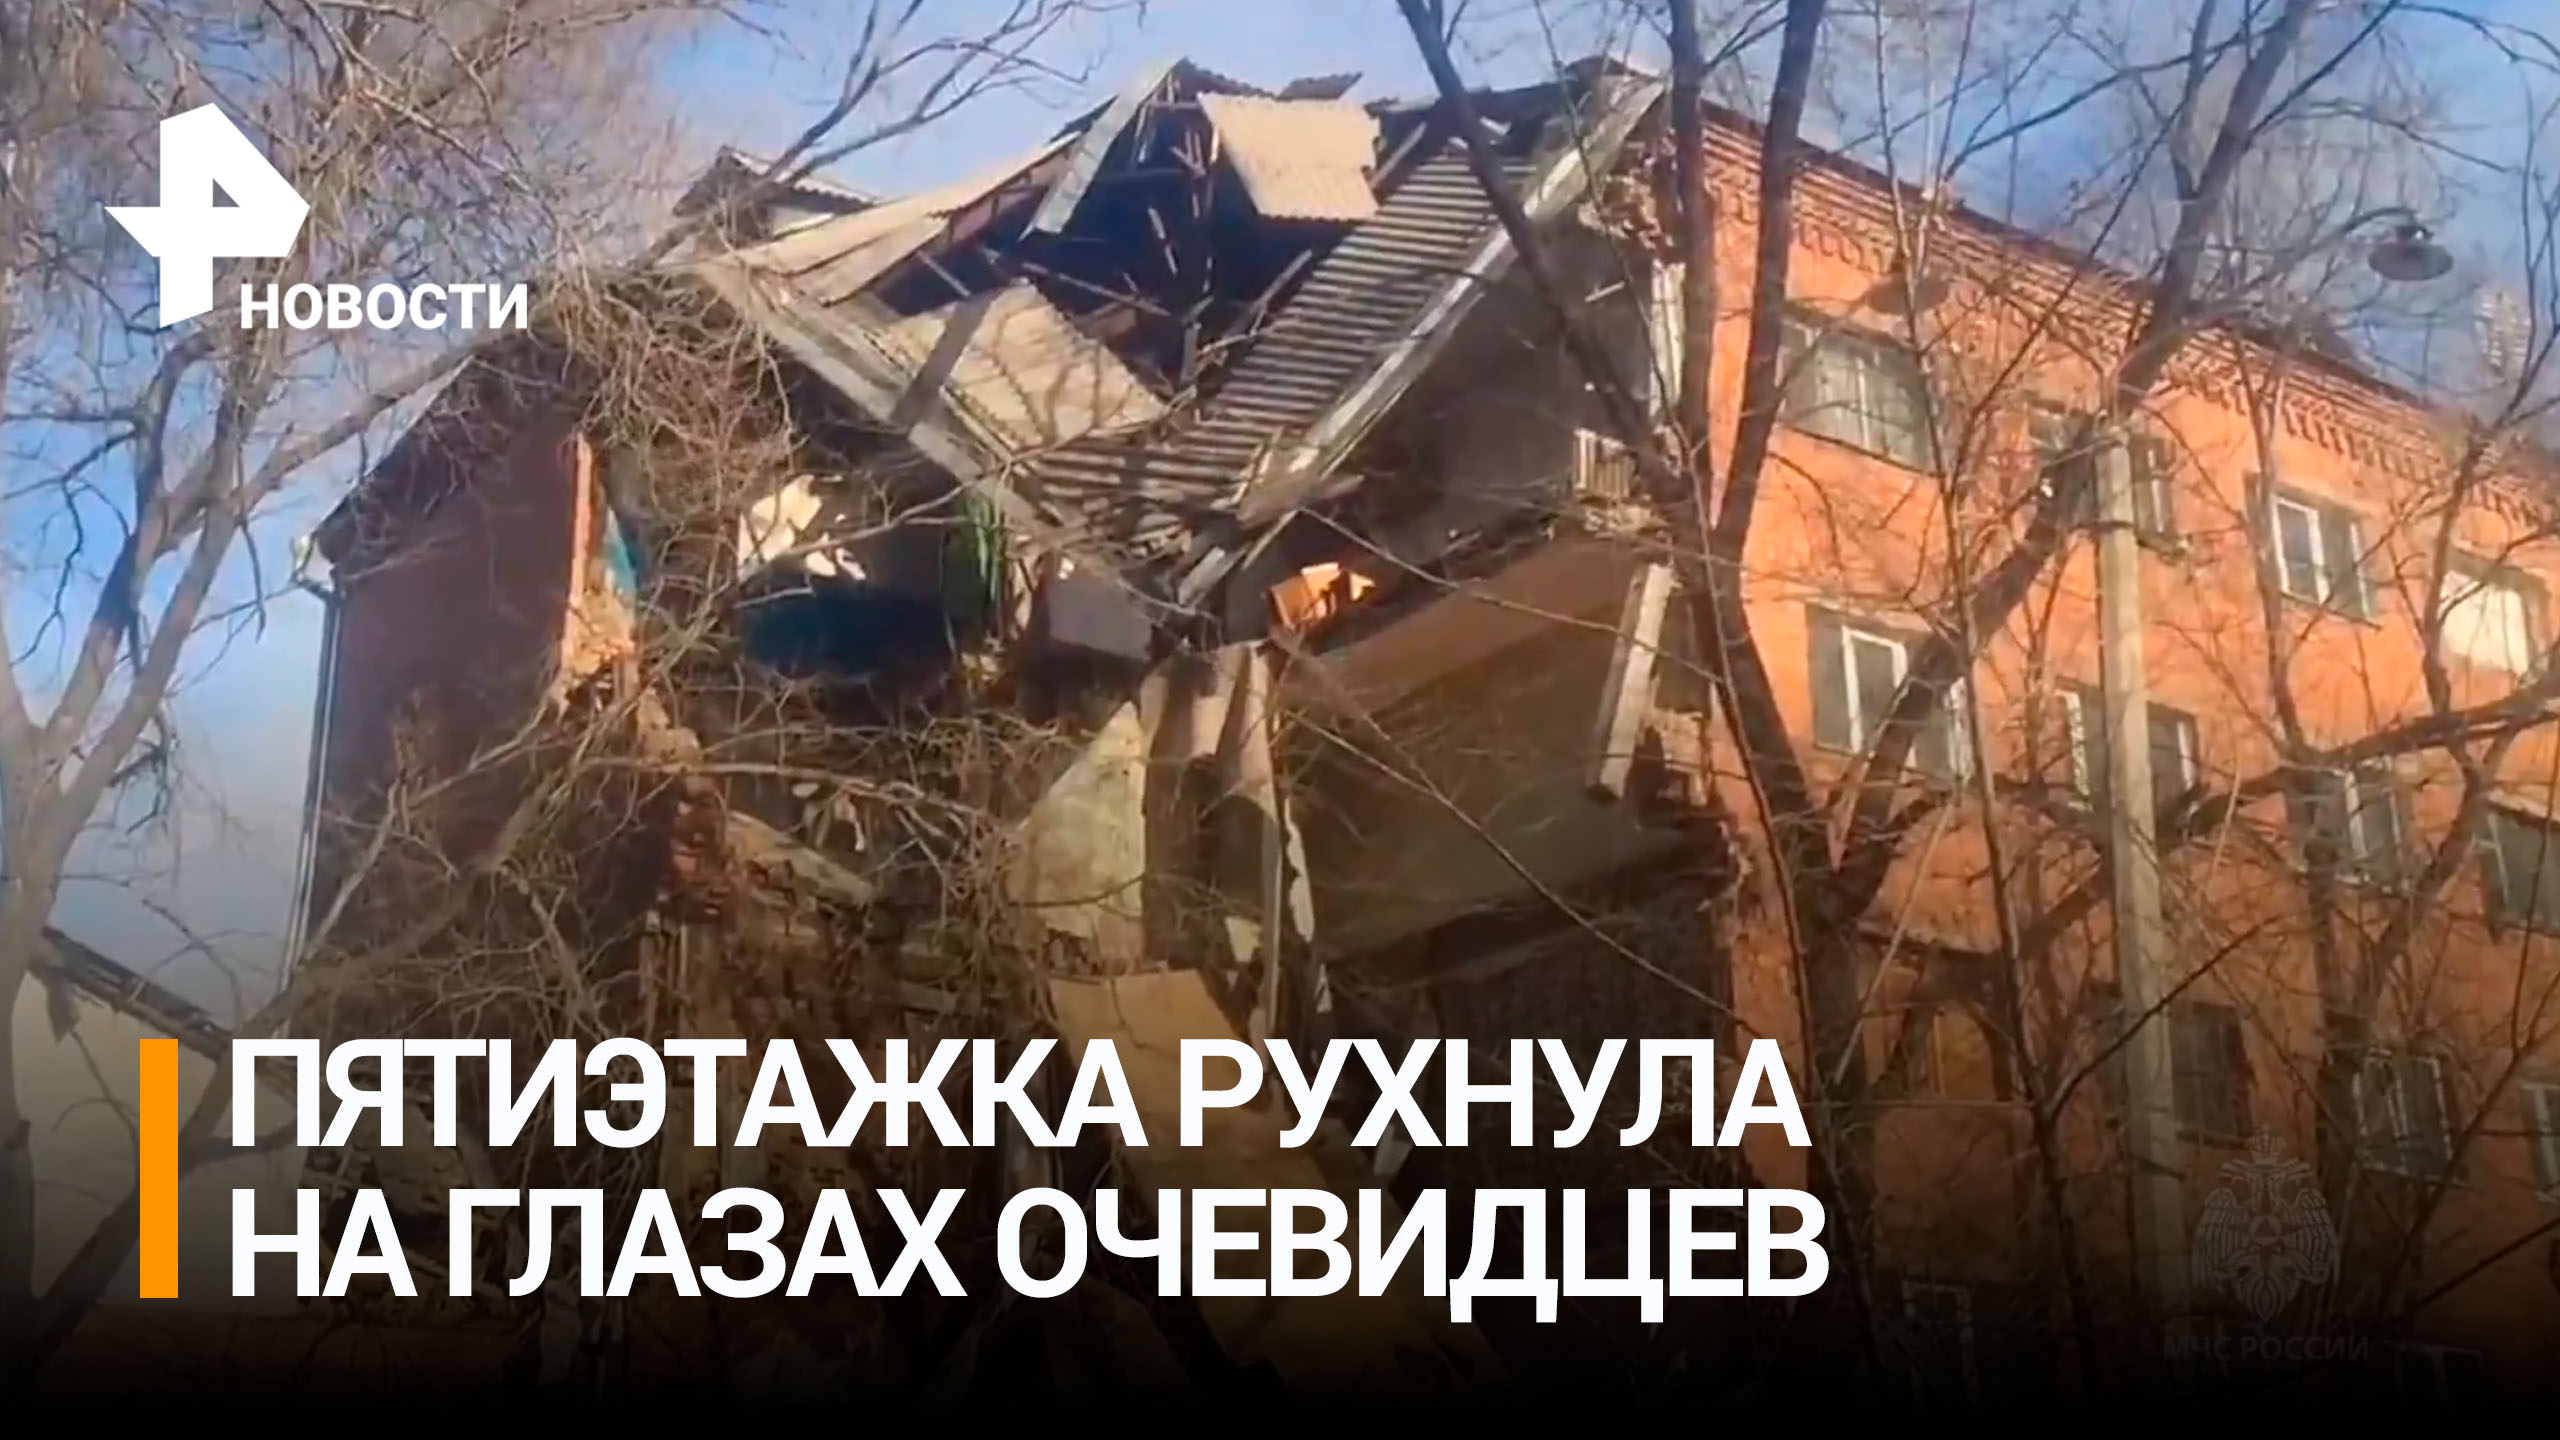 Пятиэтажка рухнула на глазах у очевидцев в Республике Хакасия